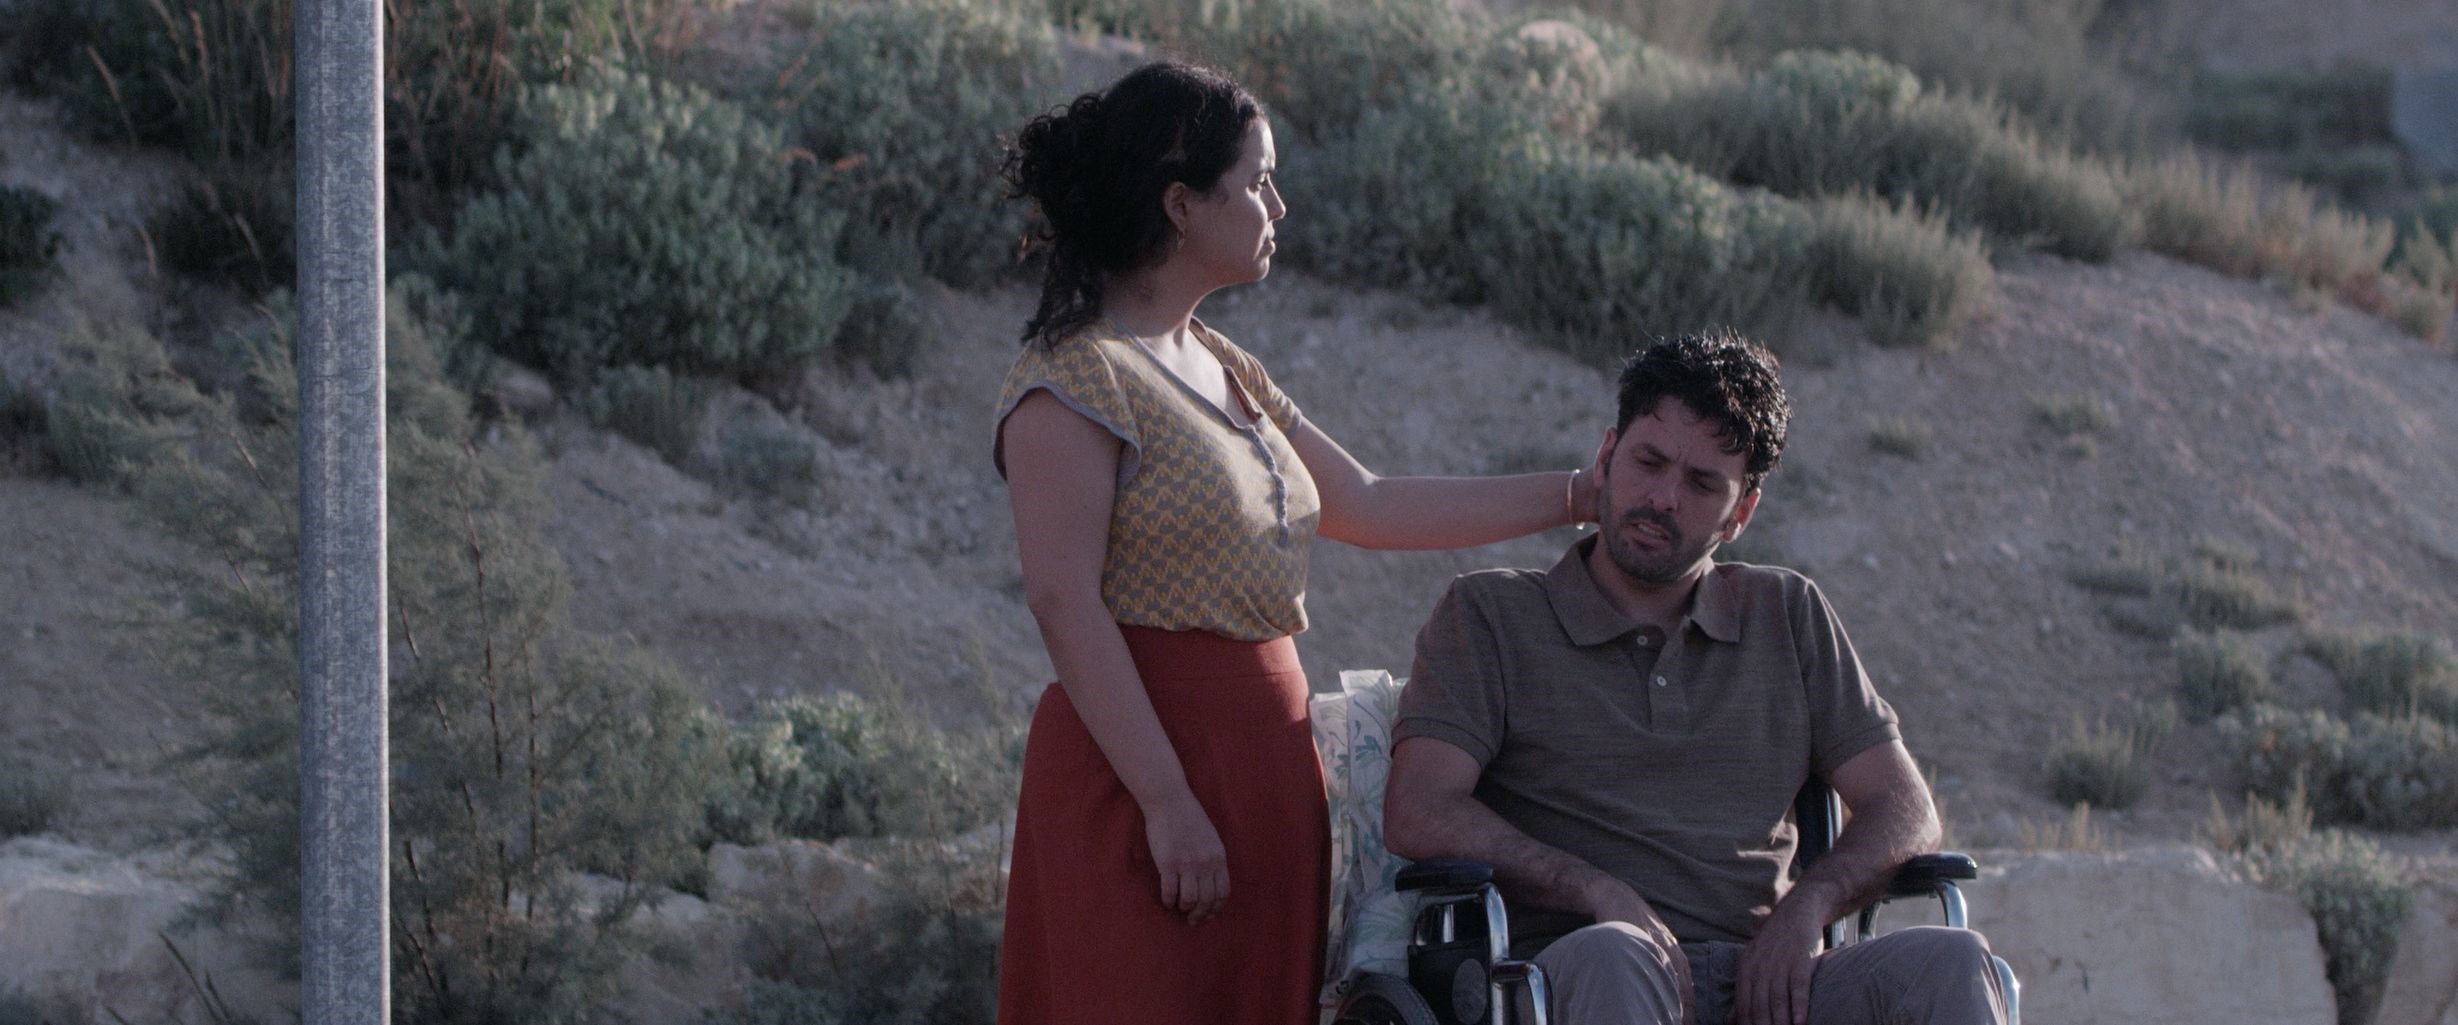 מתוך הסרט "מאמי" אישה ואיש על כסא גלגלים